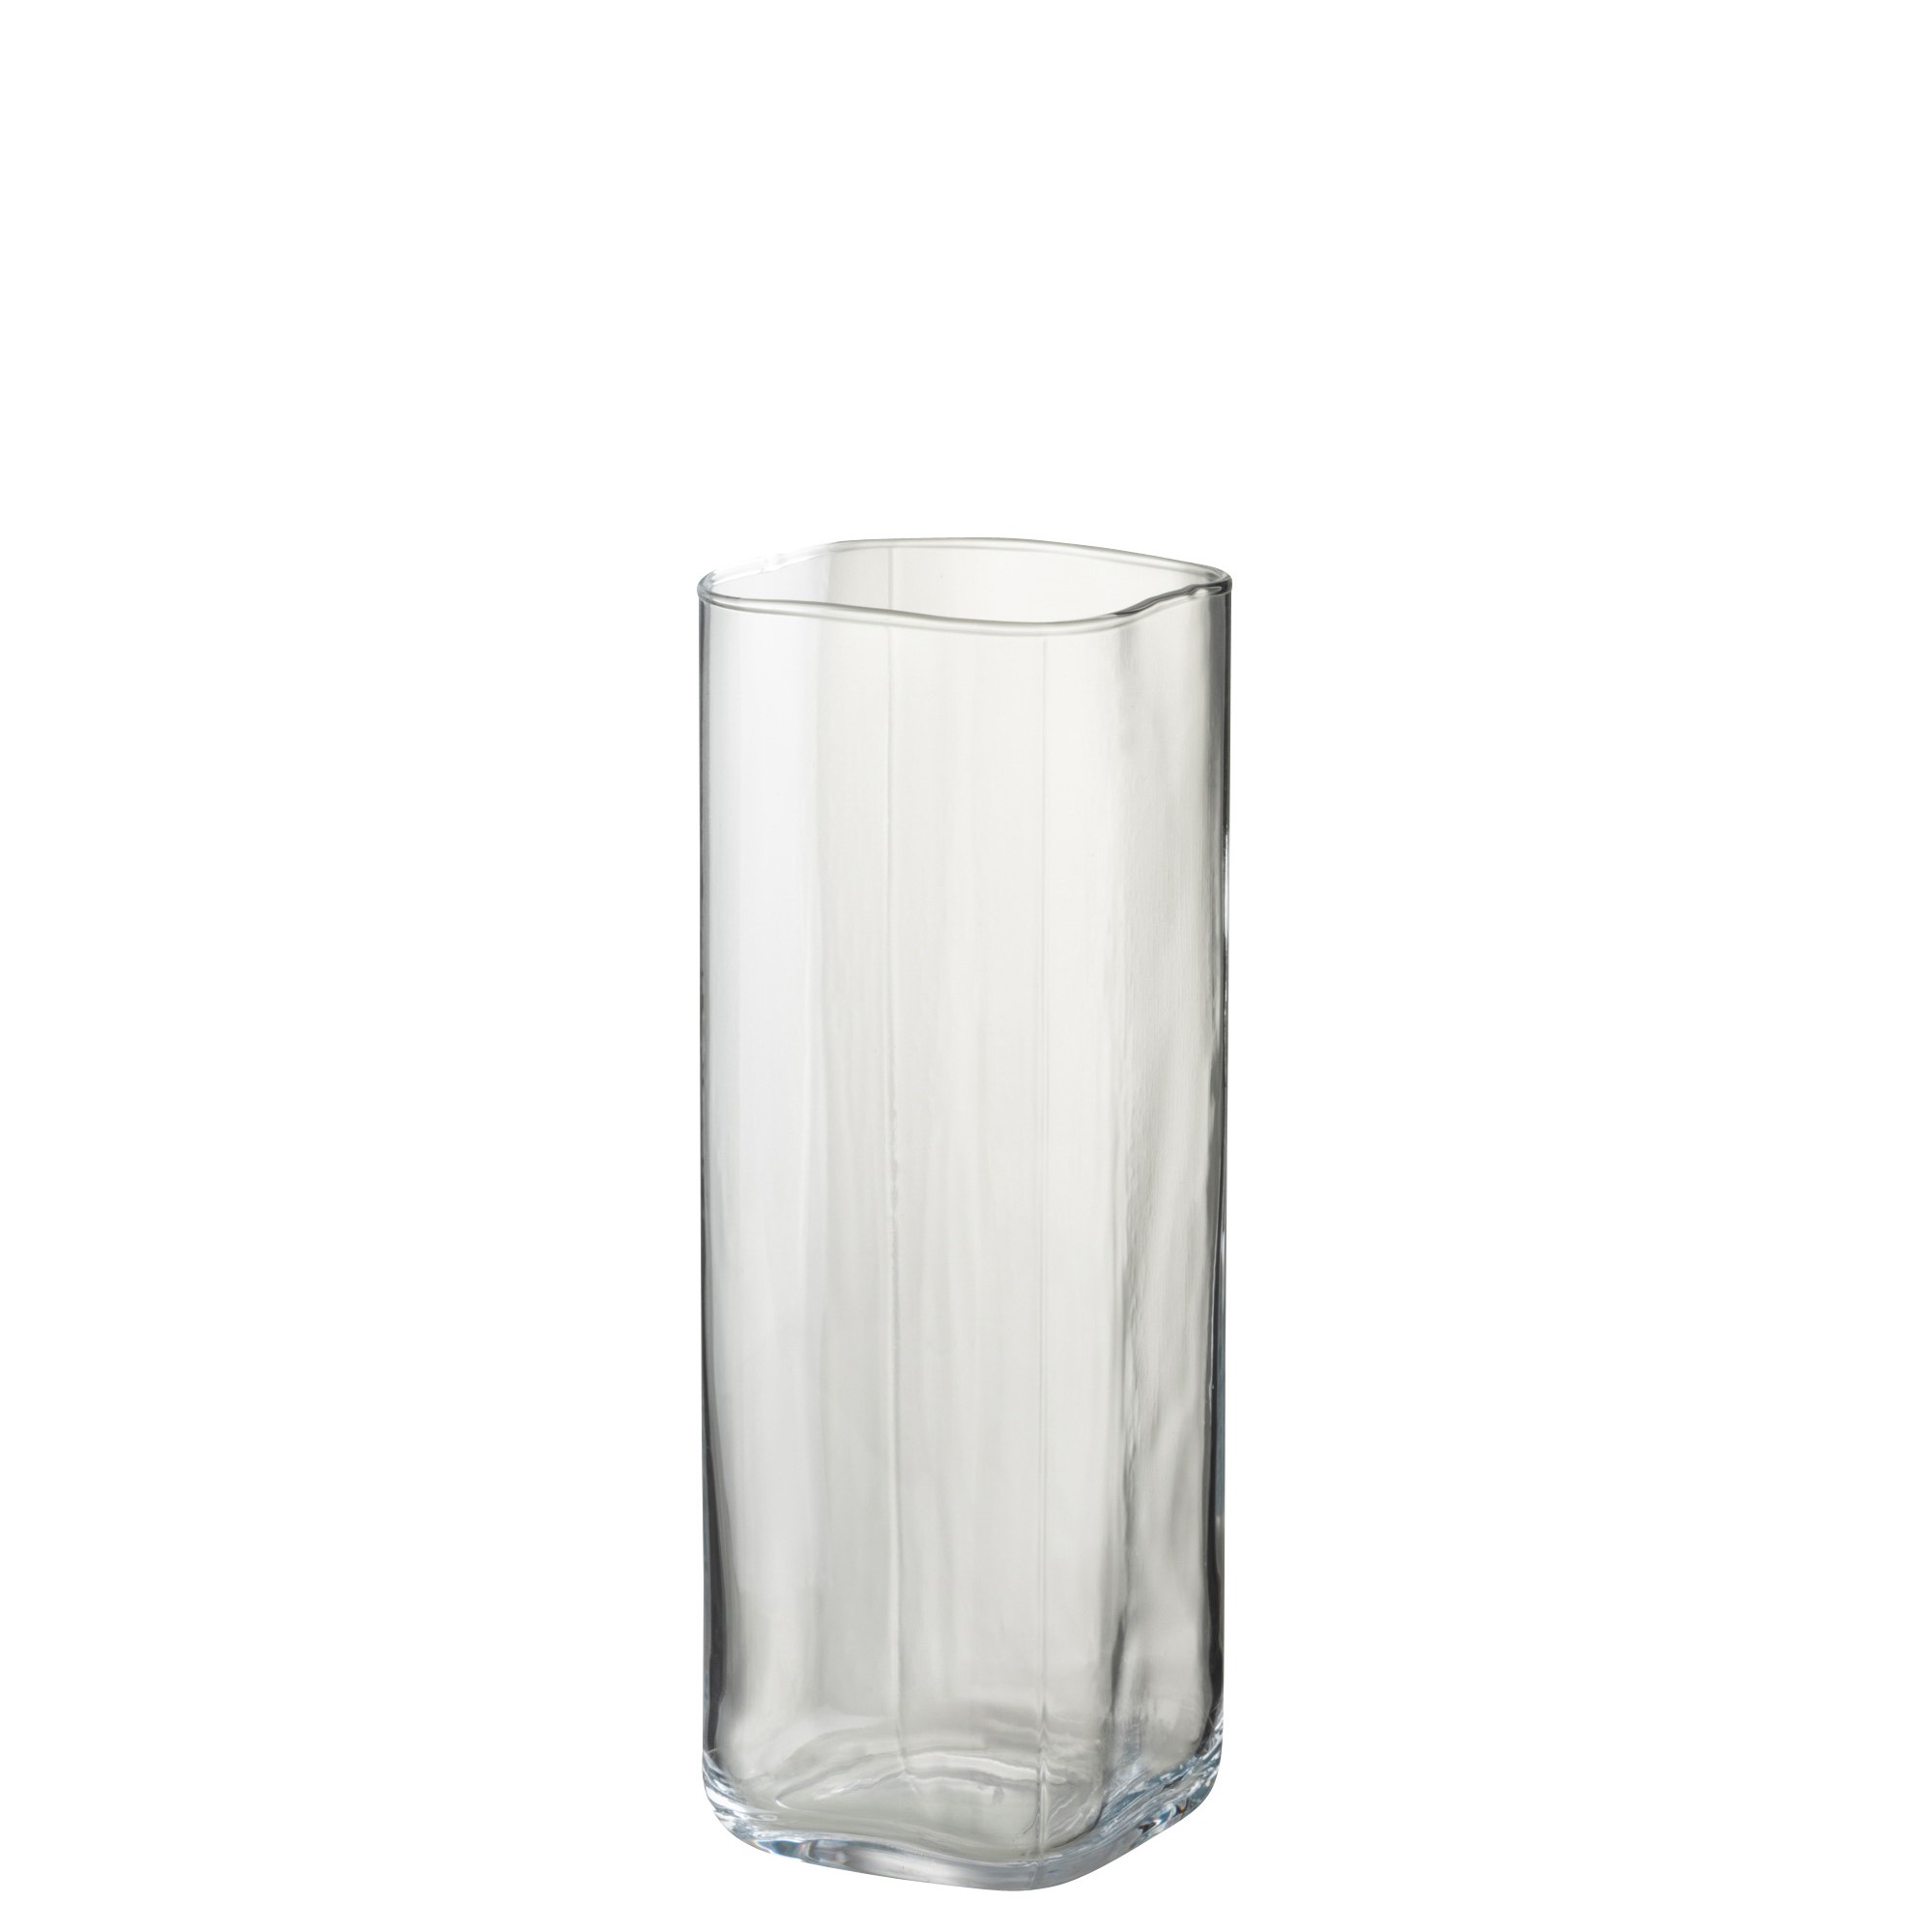 Come riempire un vaso di vetro alto